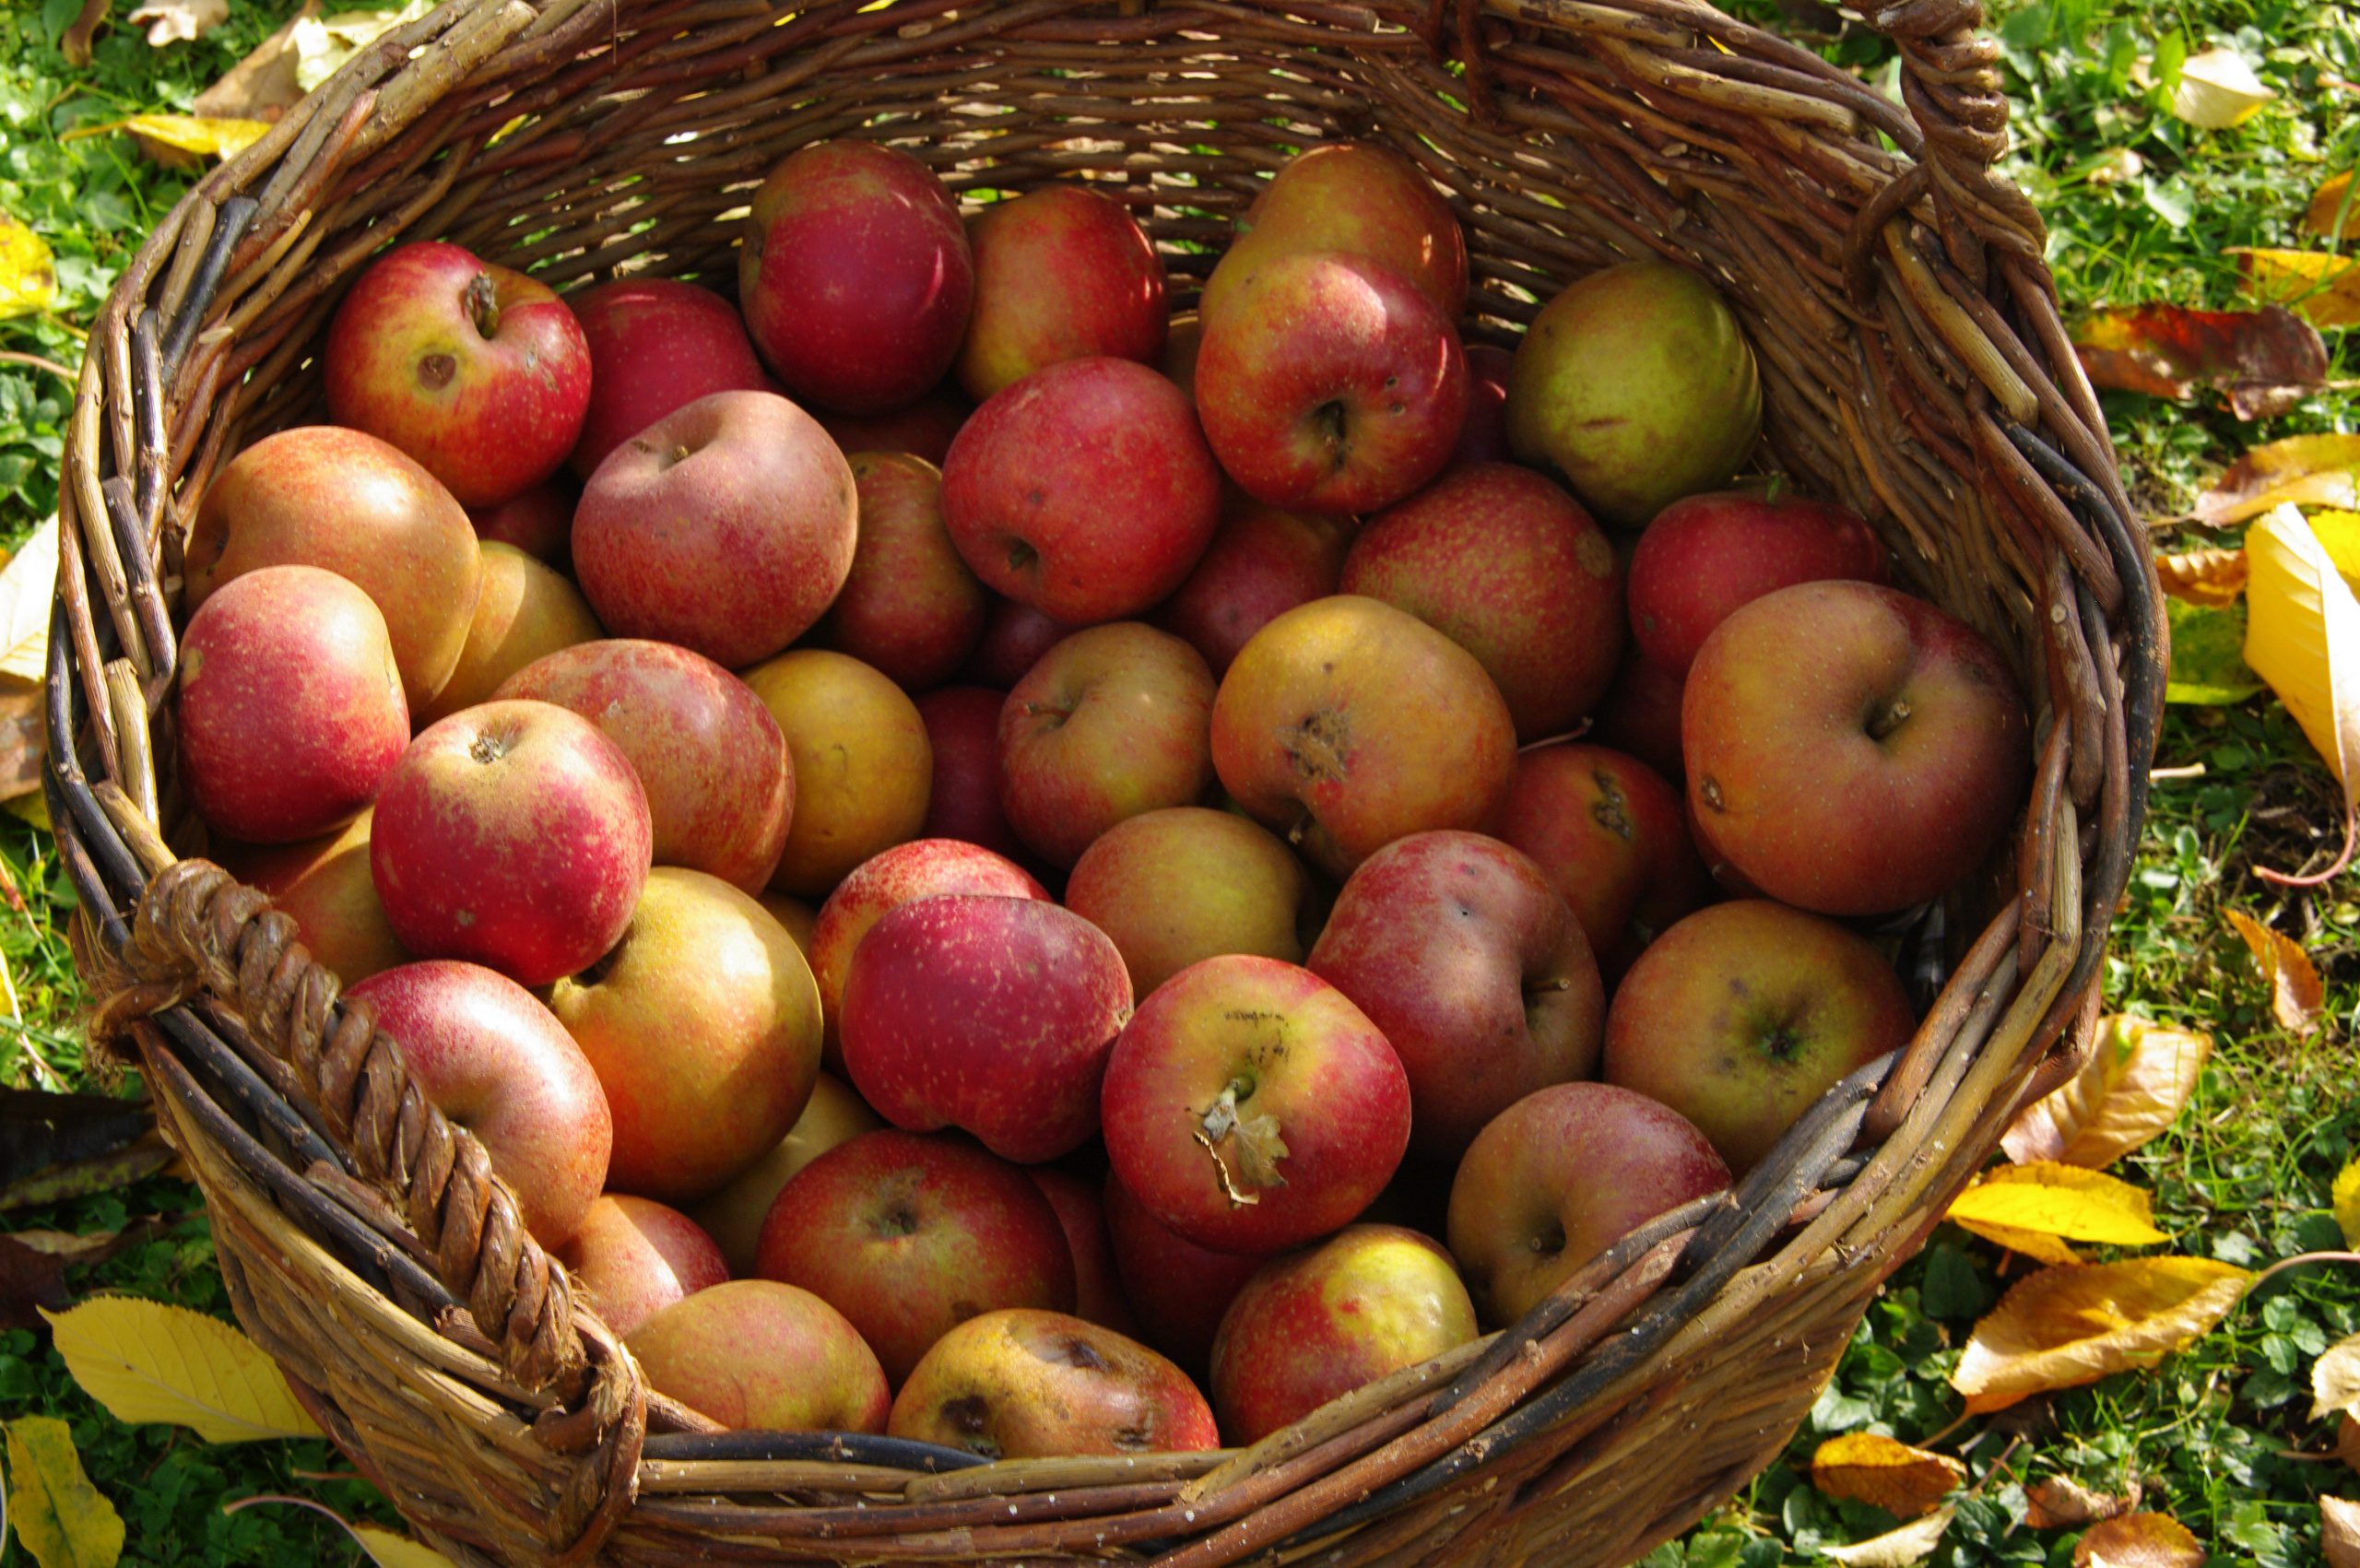 U Pick Apple Farms in Southeast WI